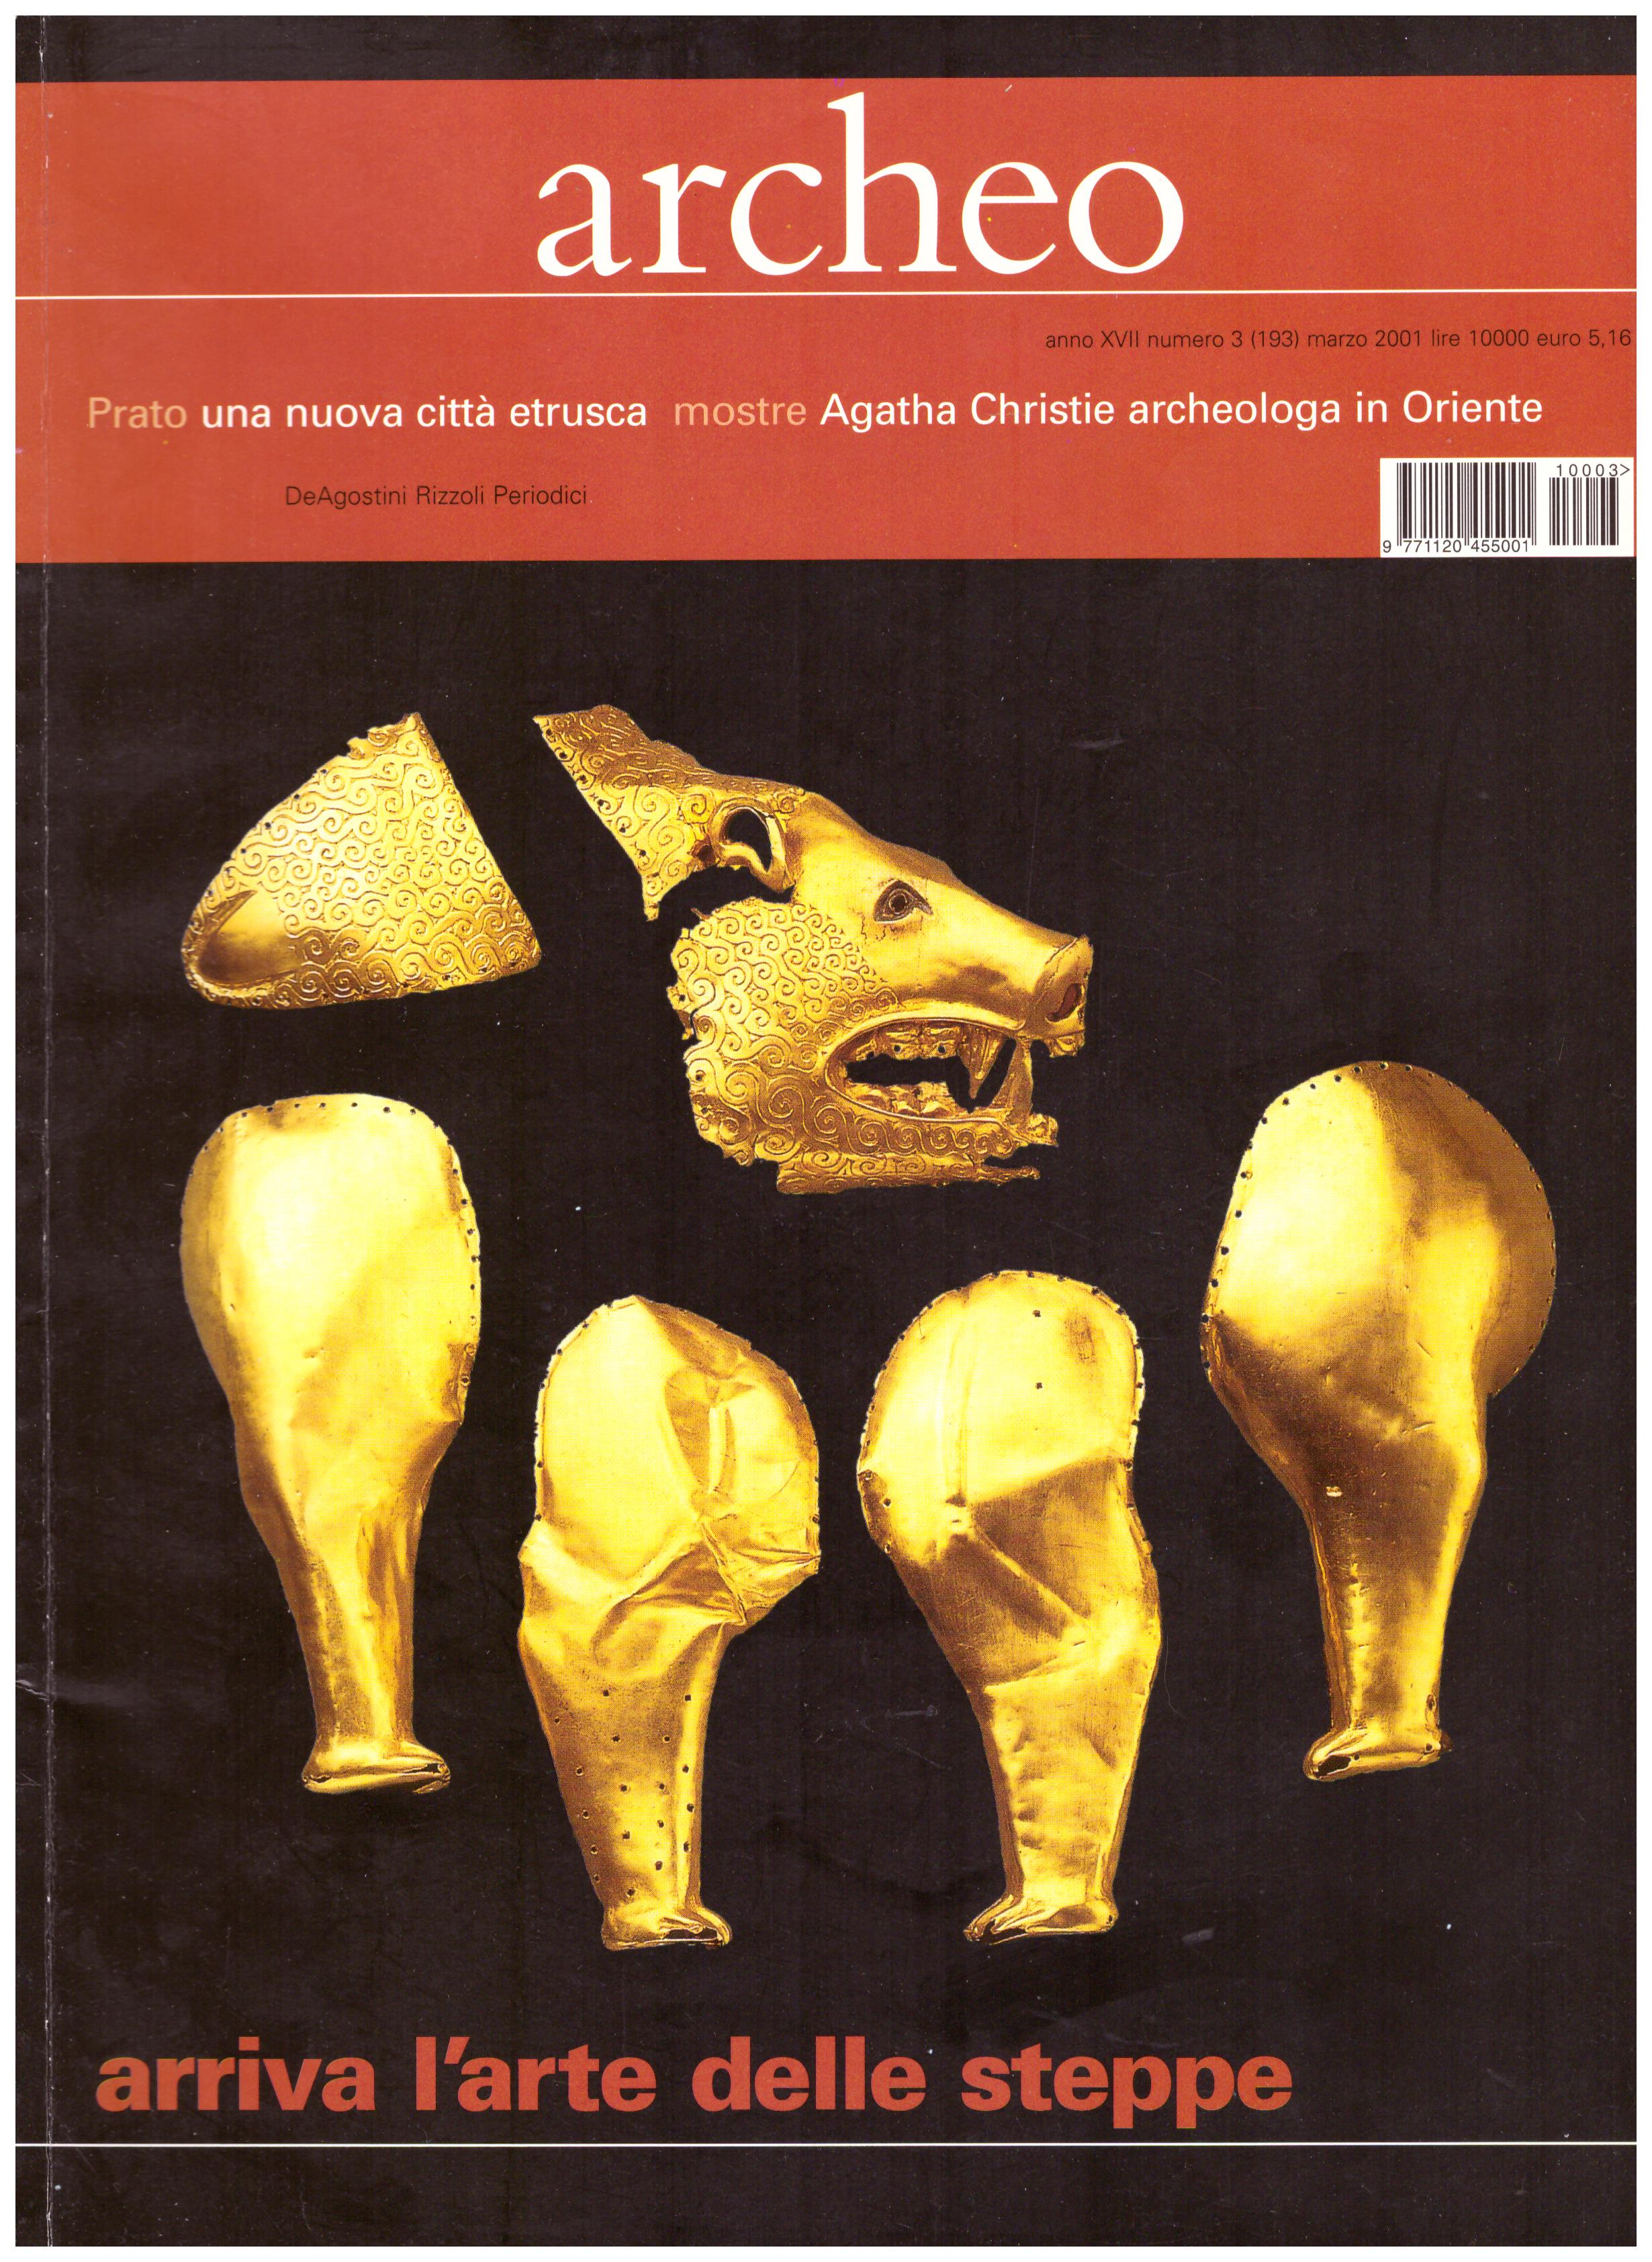 Titolo: Archeo anno XVII n.3(193) marzo 2001 Arriva l'arte delle steppe  Autore : AA.VV.  Editore: DeAgostini Rizzoli Periodici